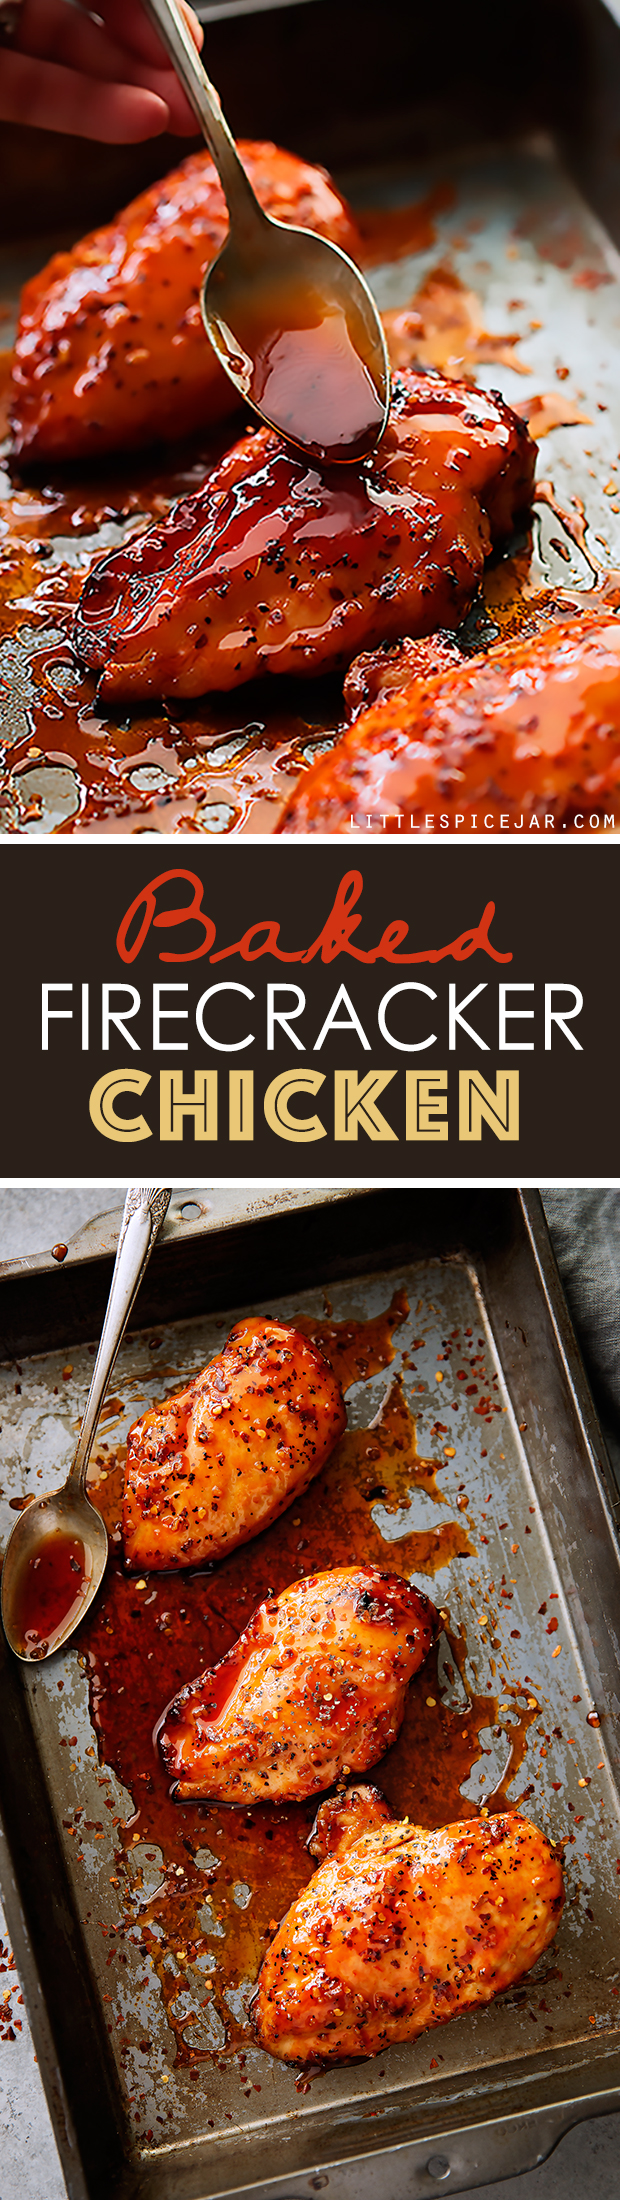 Baked-Firecracker-Chicken-8(2)